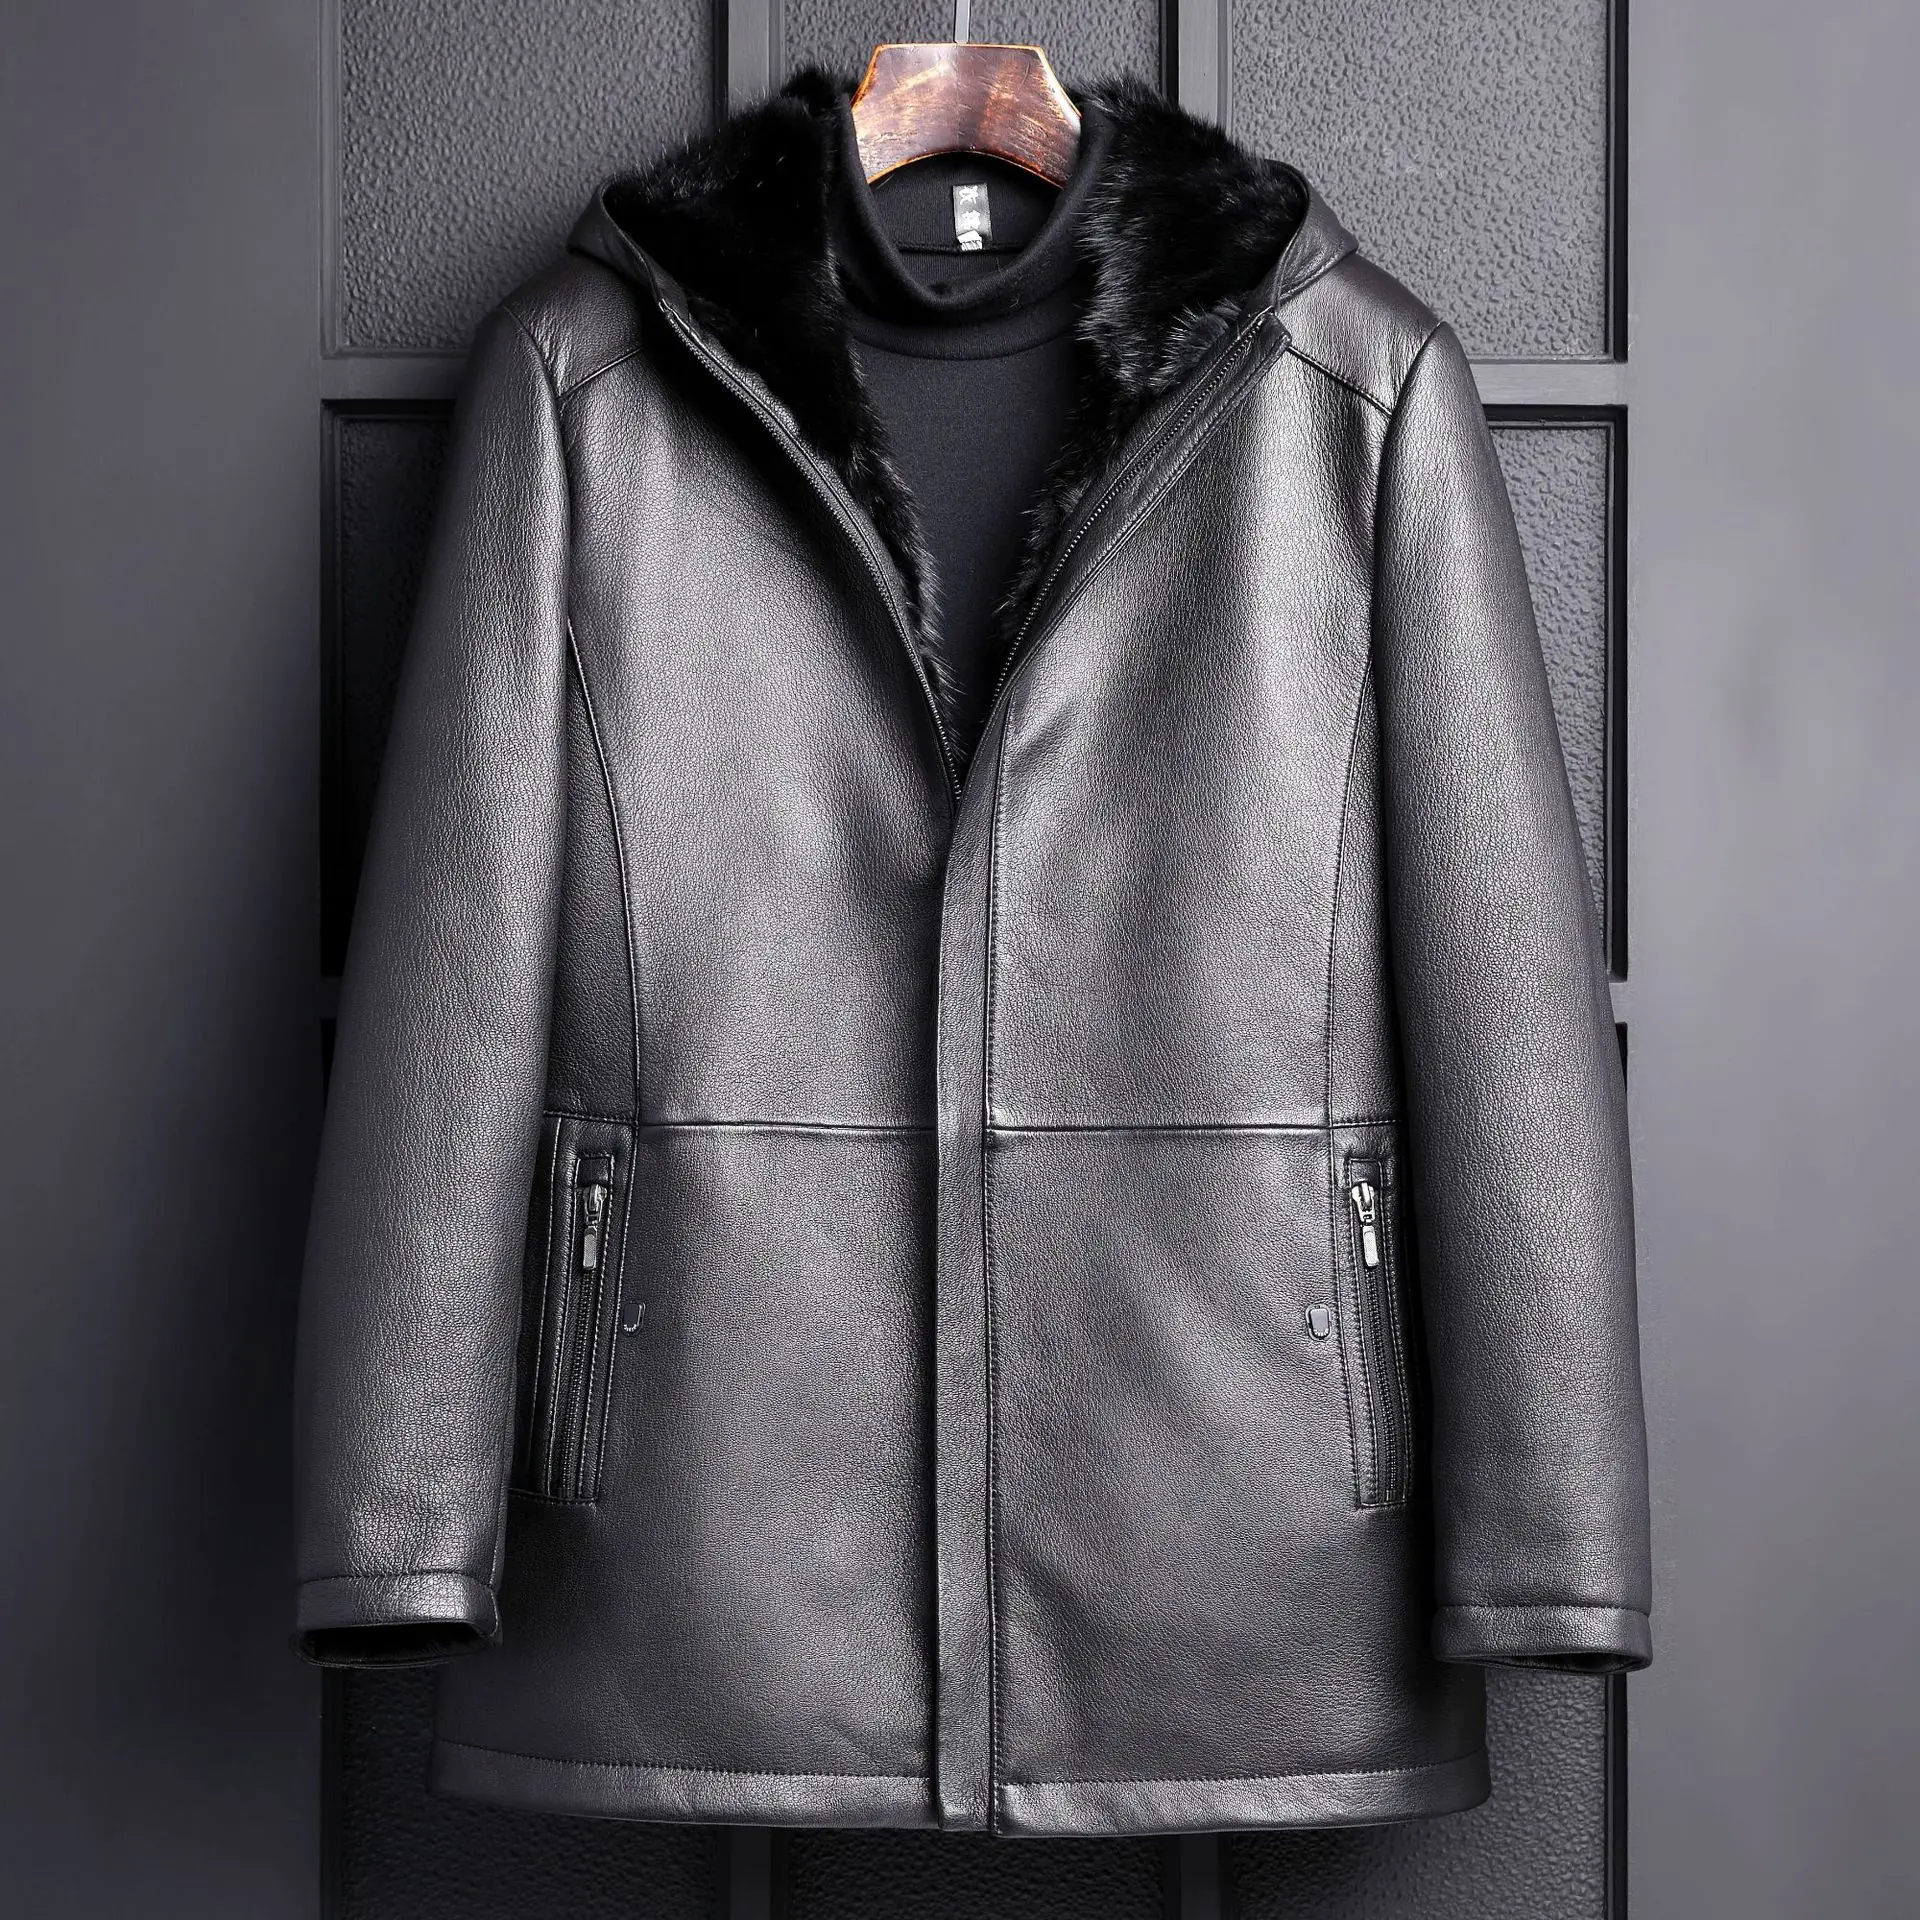 Новое поступление, мужская кожаная куртка из овчины, мужские норковые куртки, черные мужские куртки из козьей кожи, кожаные пальто с подкладкой из норки, зимние пальто